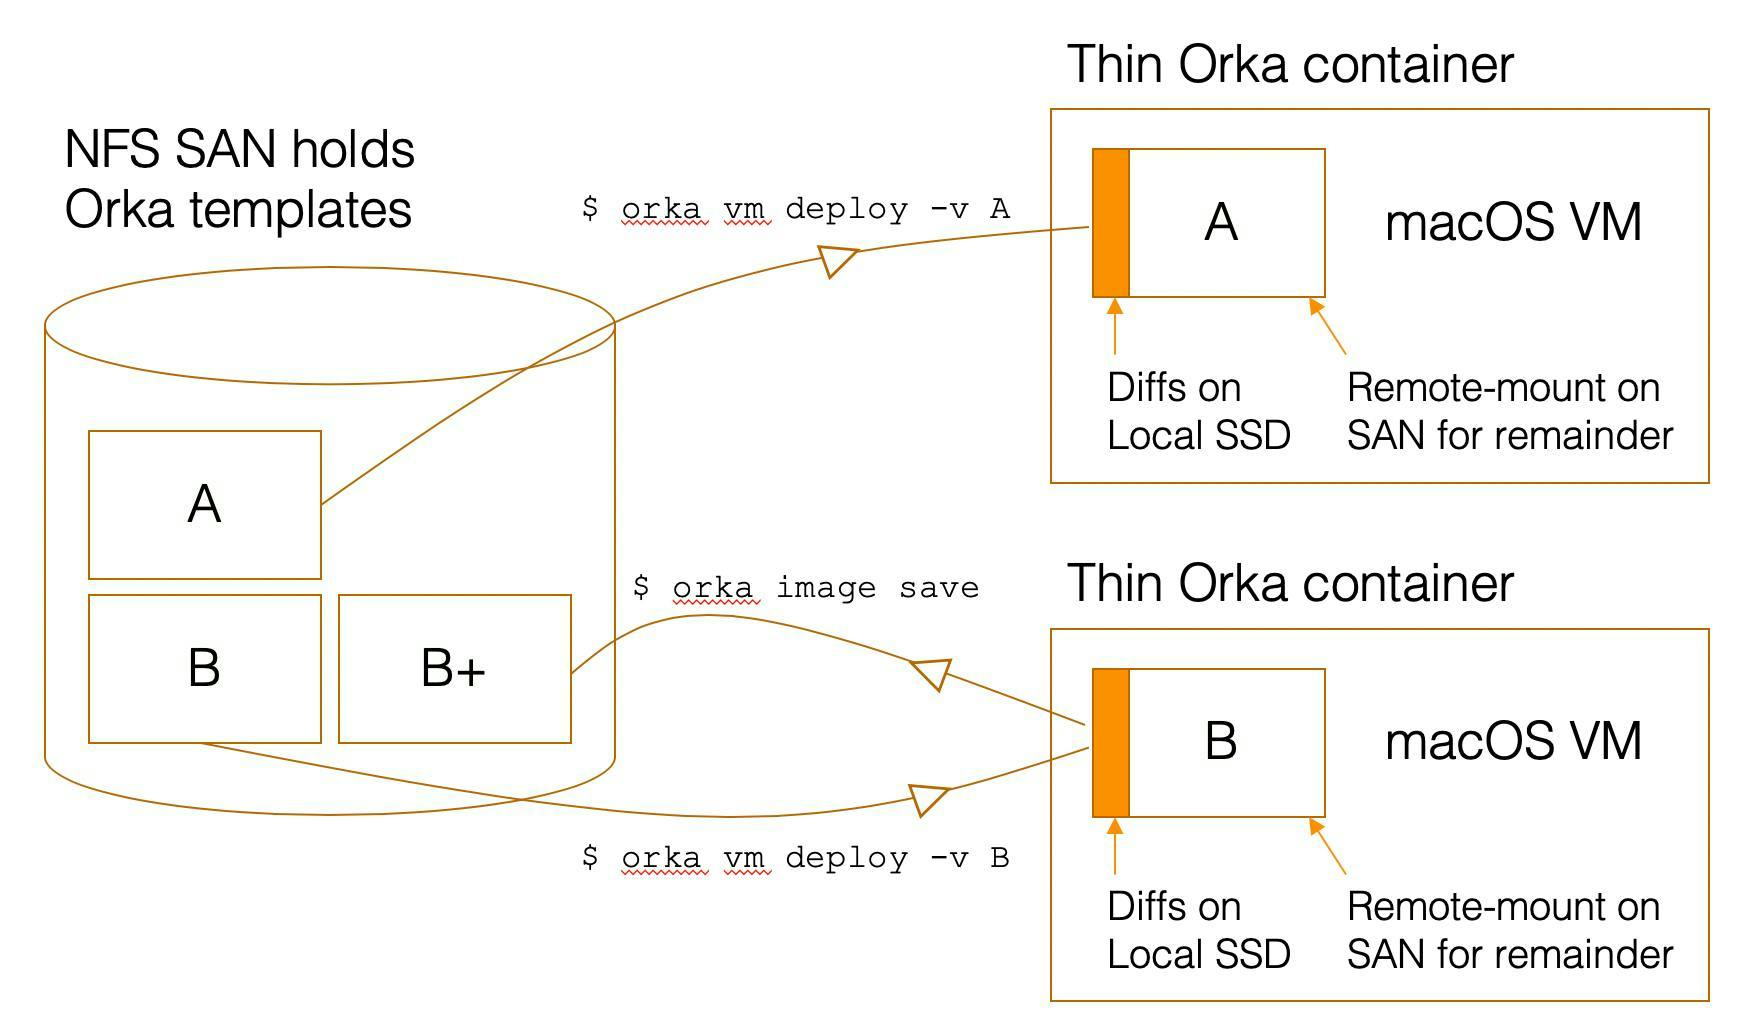 Diagram showing orka vm deploy vs orka image save